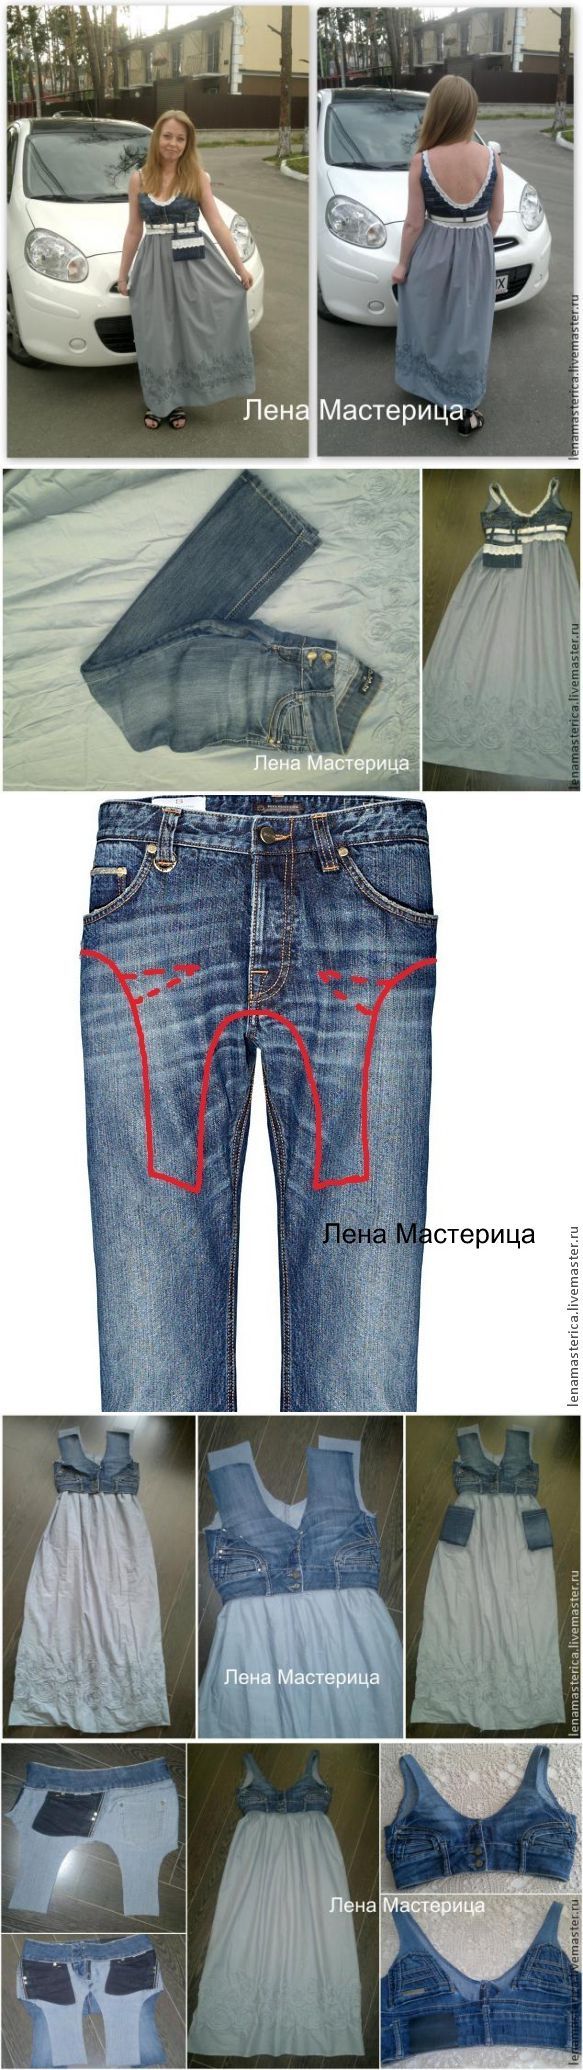 Как преобразить старую джинсовую юбку. джинсовая юбка своими руками из старых джинс.